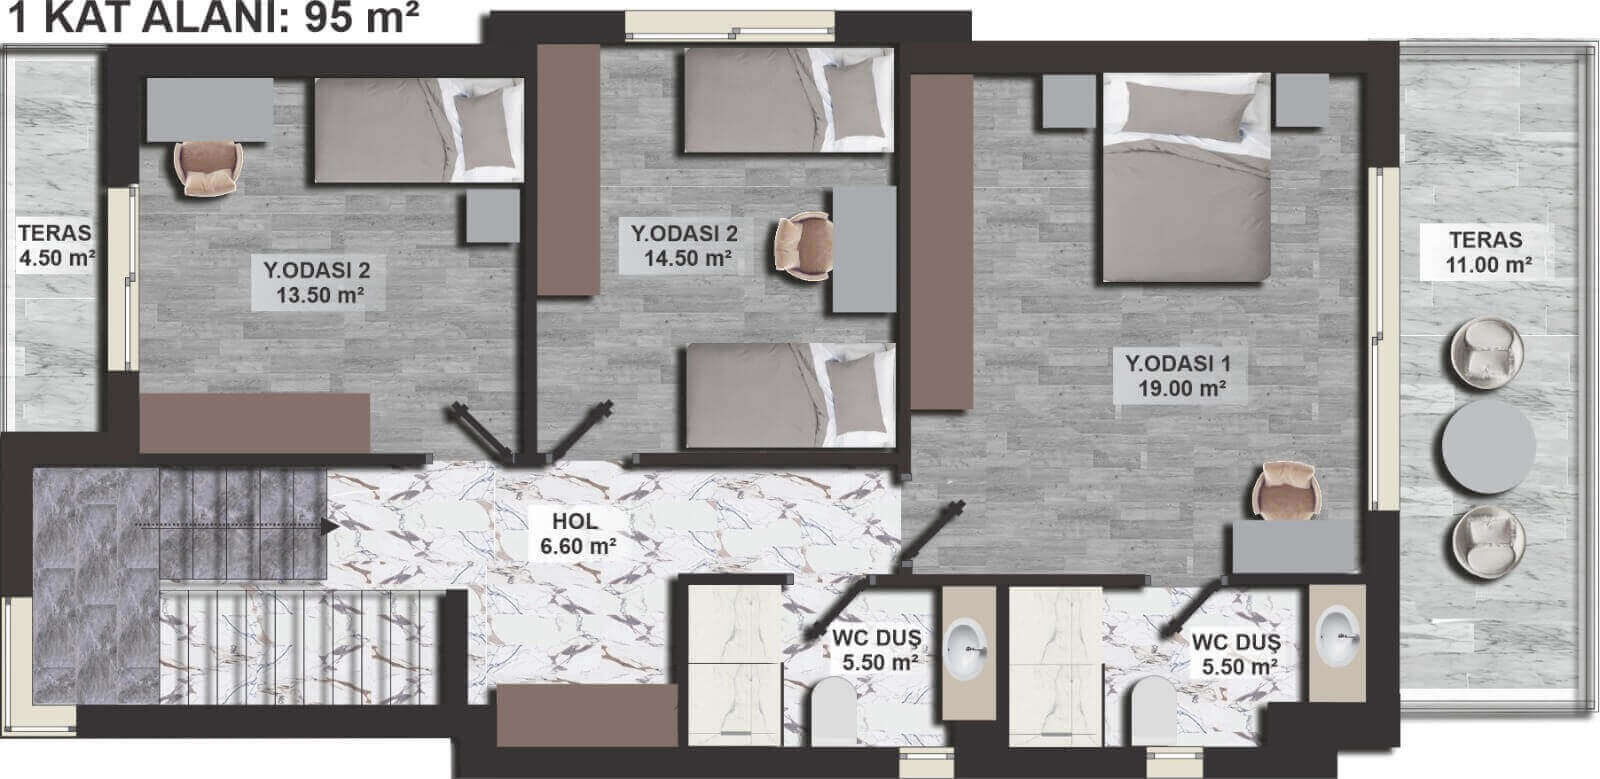 Catalkoy Town Ultra- Modern Villa 3 Bed First Floor Plan